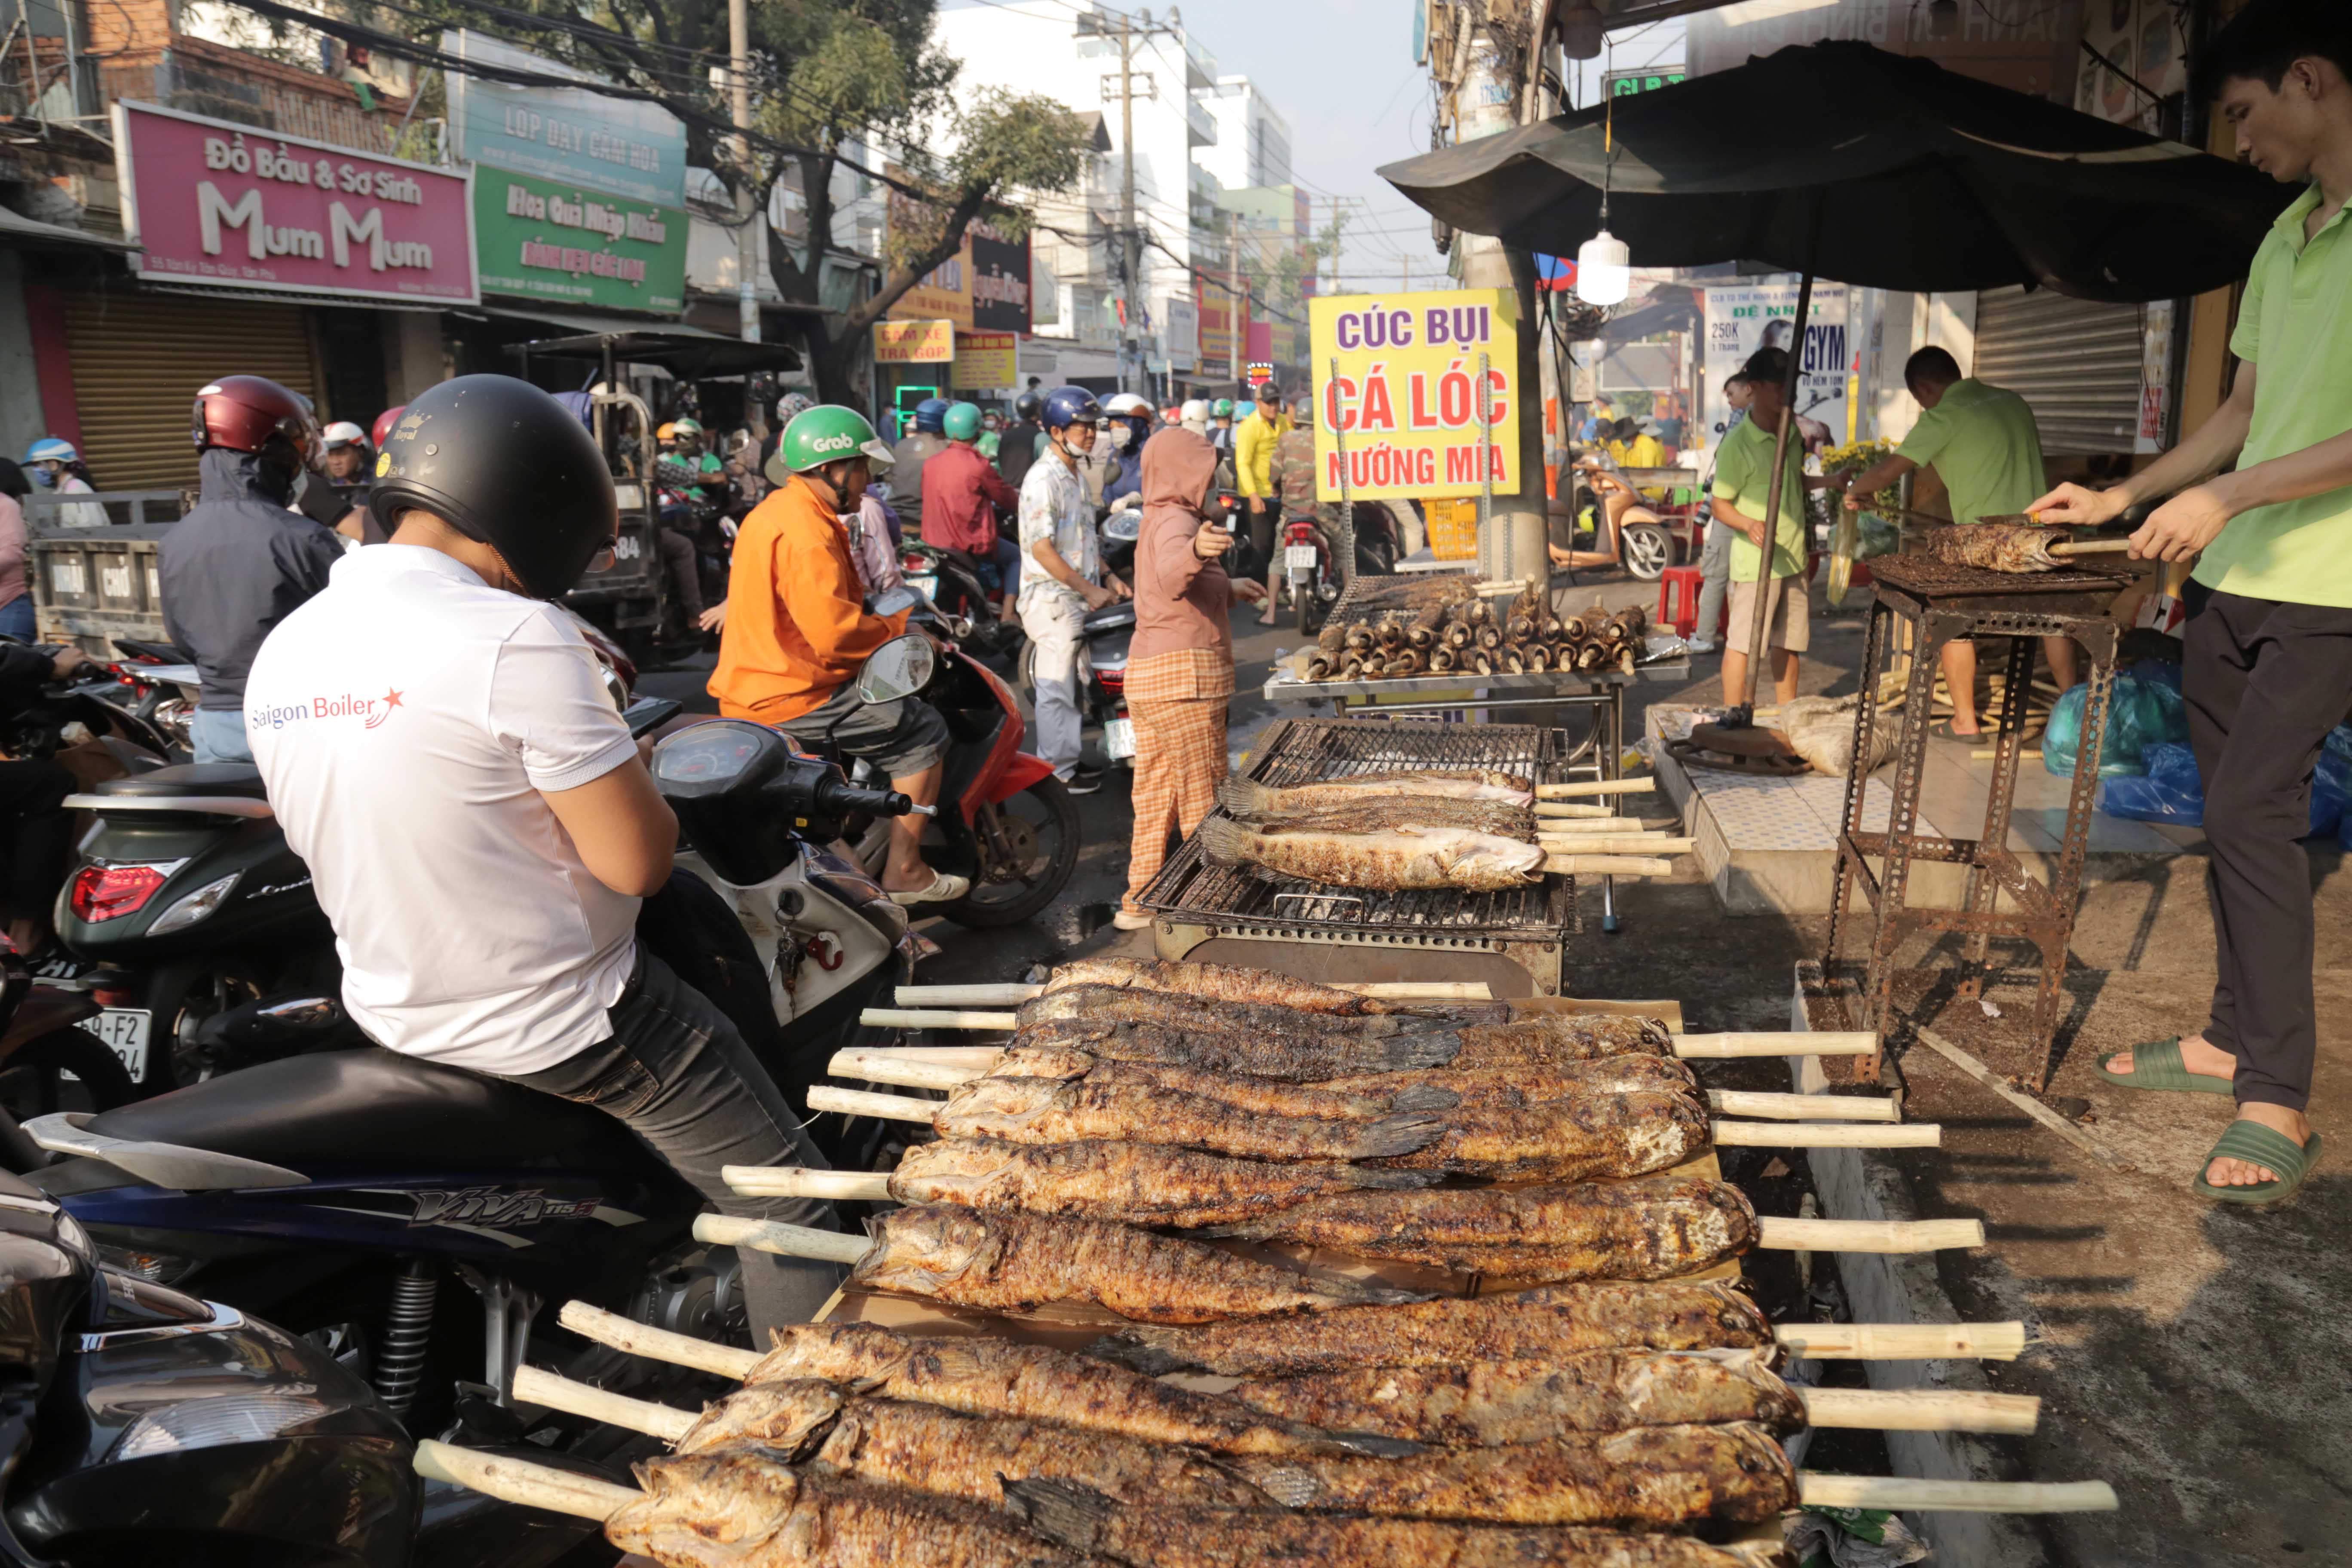 Tại đường Tân Kỳ Tân Quý (quận Tân Phú), ngay từ sáng sớm, đã có hàng trăm người đến mua cá lóc nướng. Chỉ một đoạn đường dài khoảng 300m nhưng đã có hàng chục điểm bán cá lóc nướng. Càng về sau, lượng người đổ về đây càng đông.